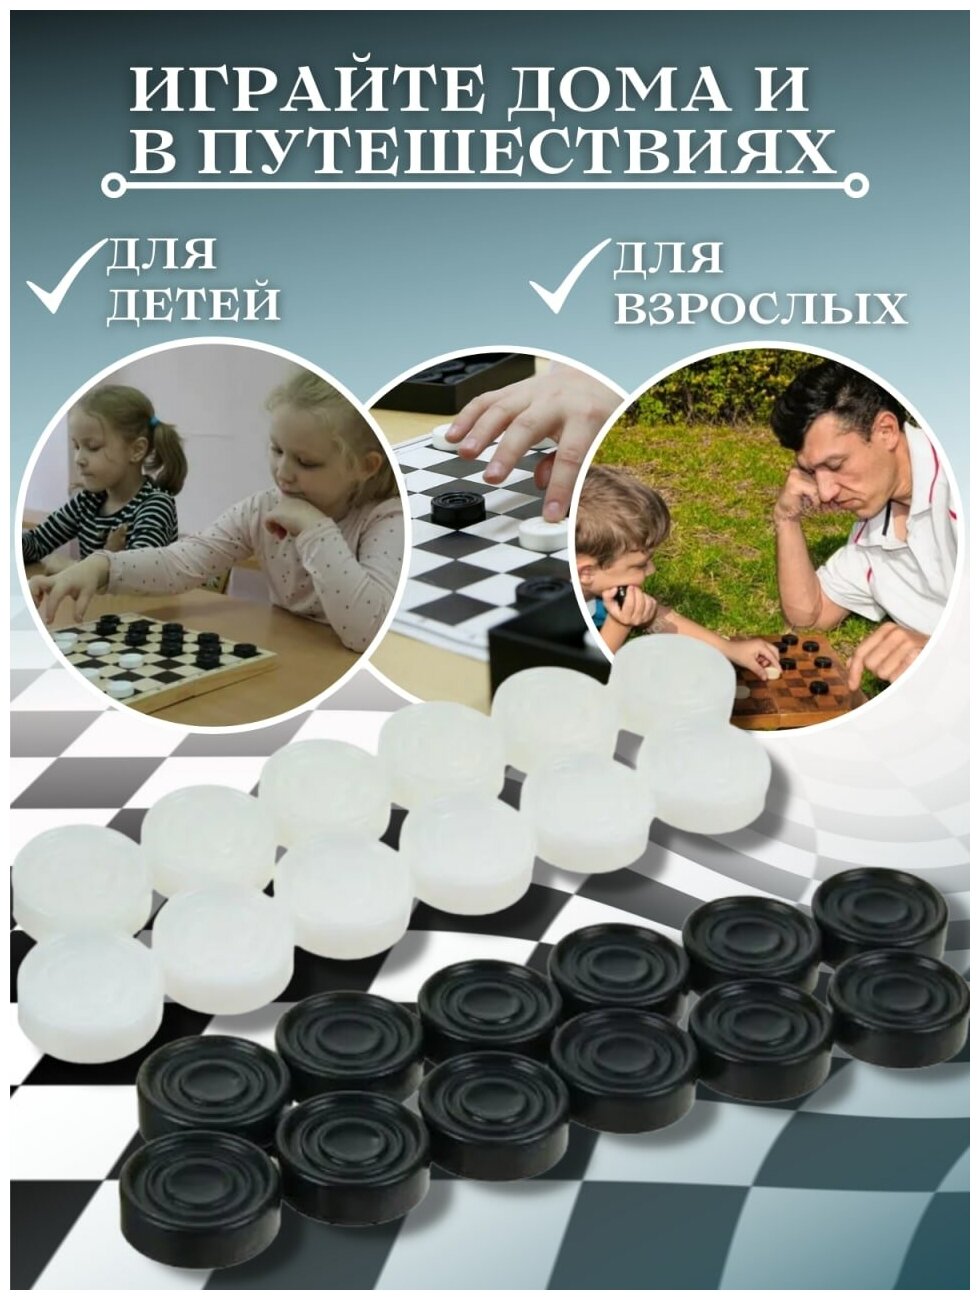 Шашки для детей / шашки с игровым полем / шашки игра / доска для шашек / шашки детские